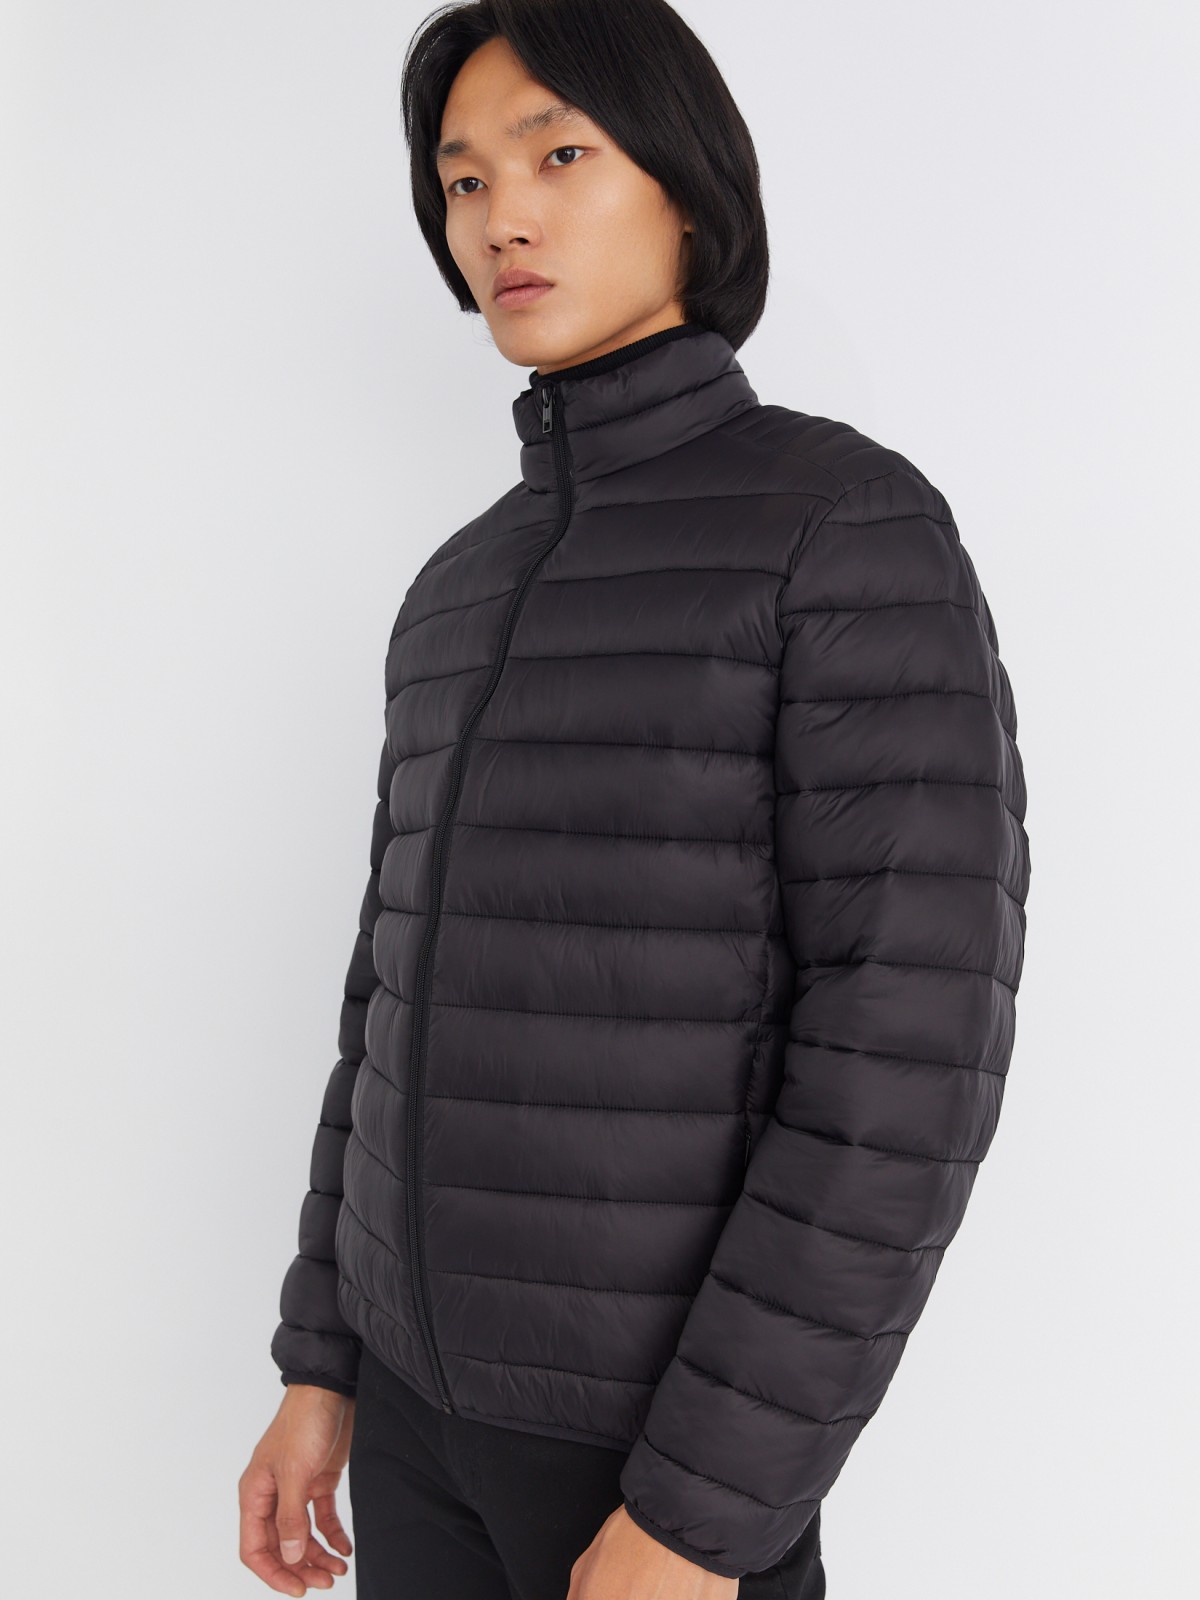 Лёгкая утеплённая стёганая куртка на молнии с воротником-стойкой zolla 013335102064, цвет черный, размер S - фото 3